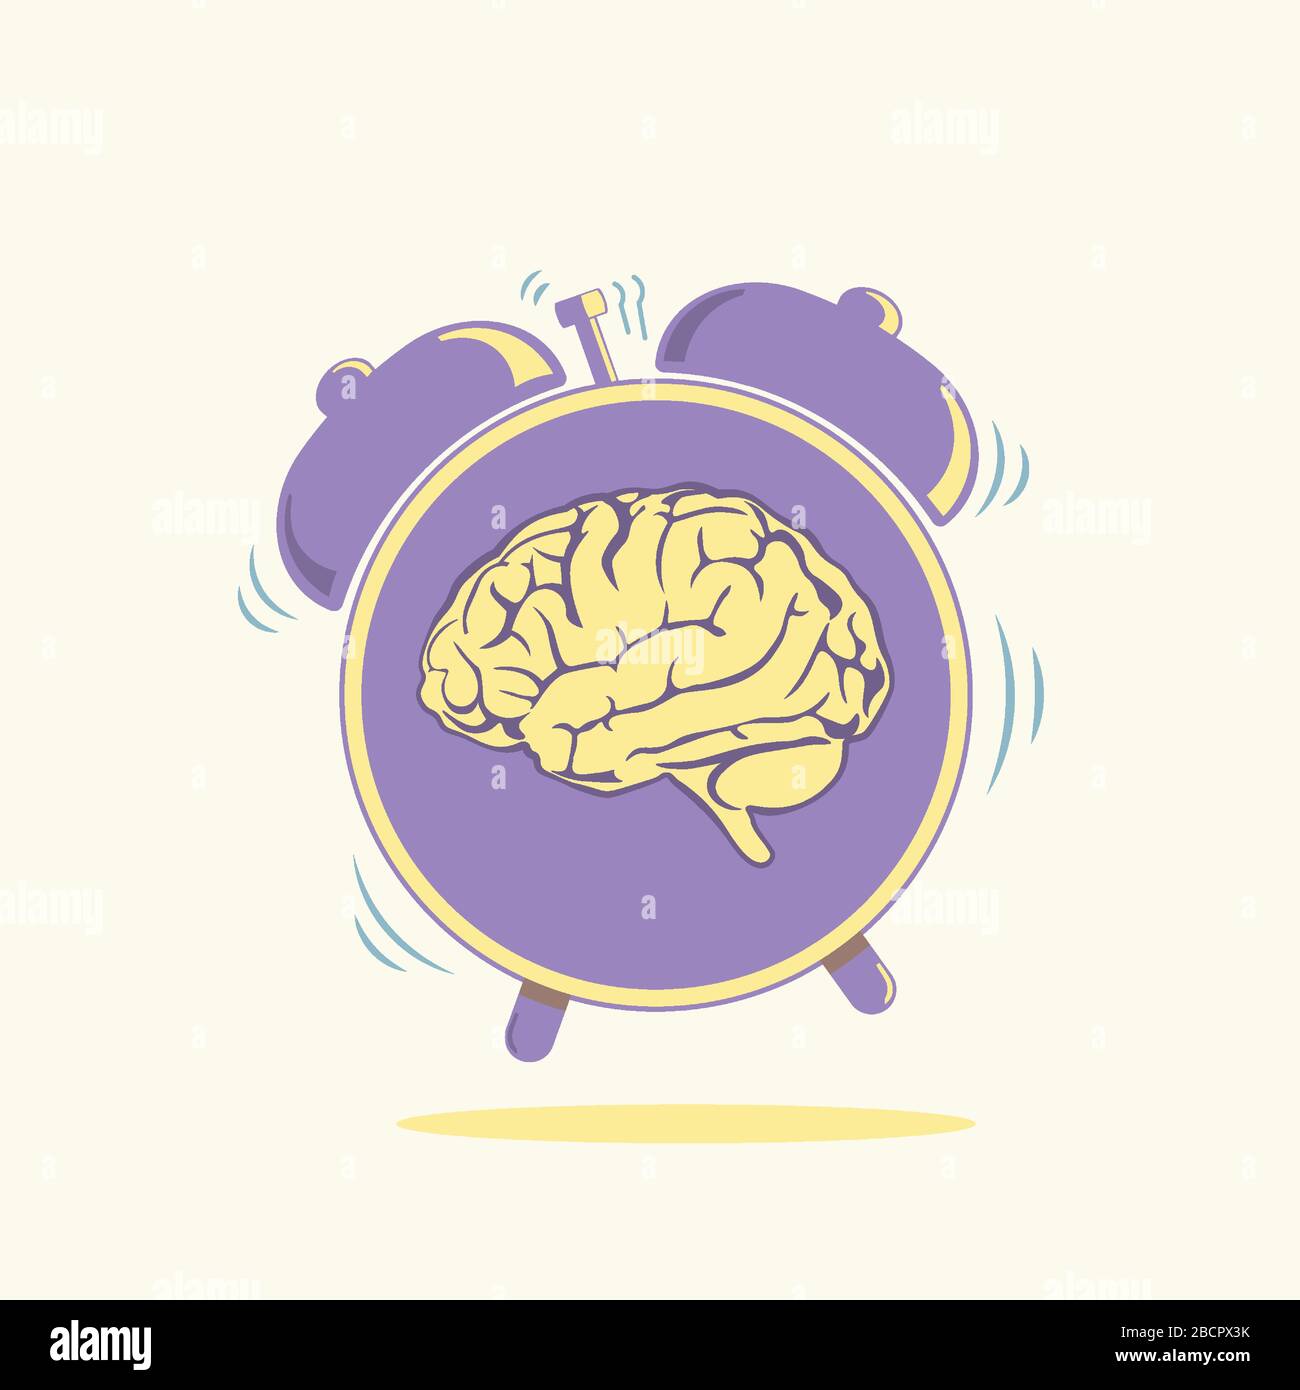 Menschliches Gehirn mit Darstellung des Alarm-Symbols. Modernes Lifestyle-Konzept. Das Gesundheitswesen gibt ein symbolisches Bild heraus. Stock Vektor